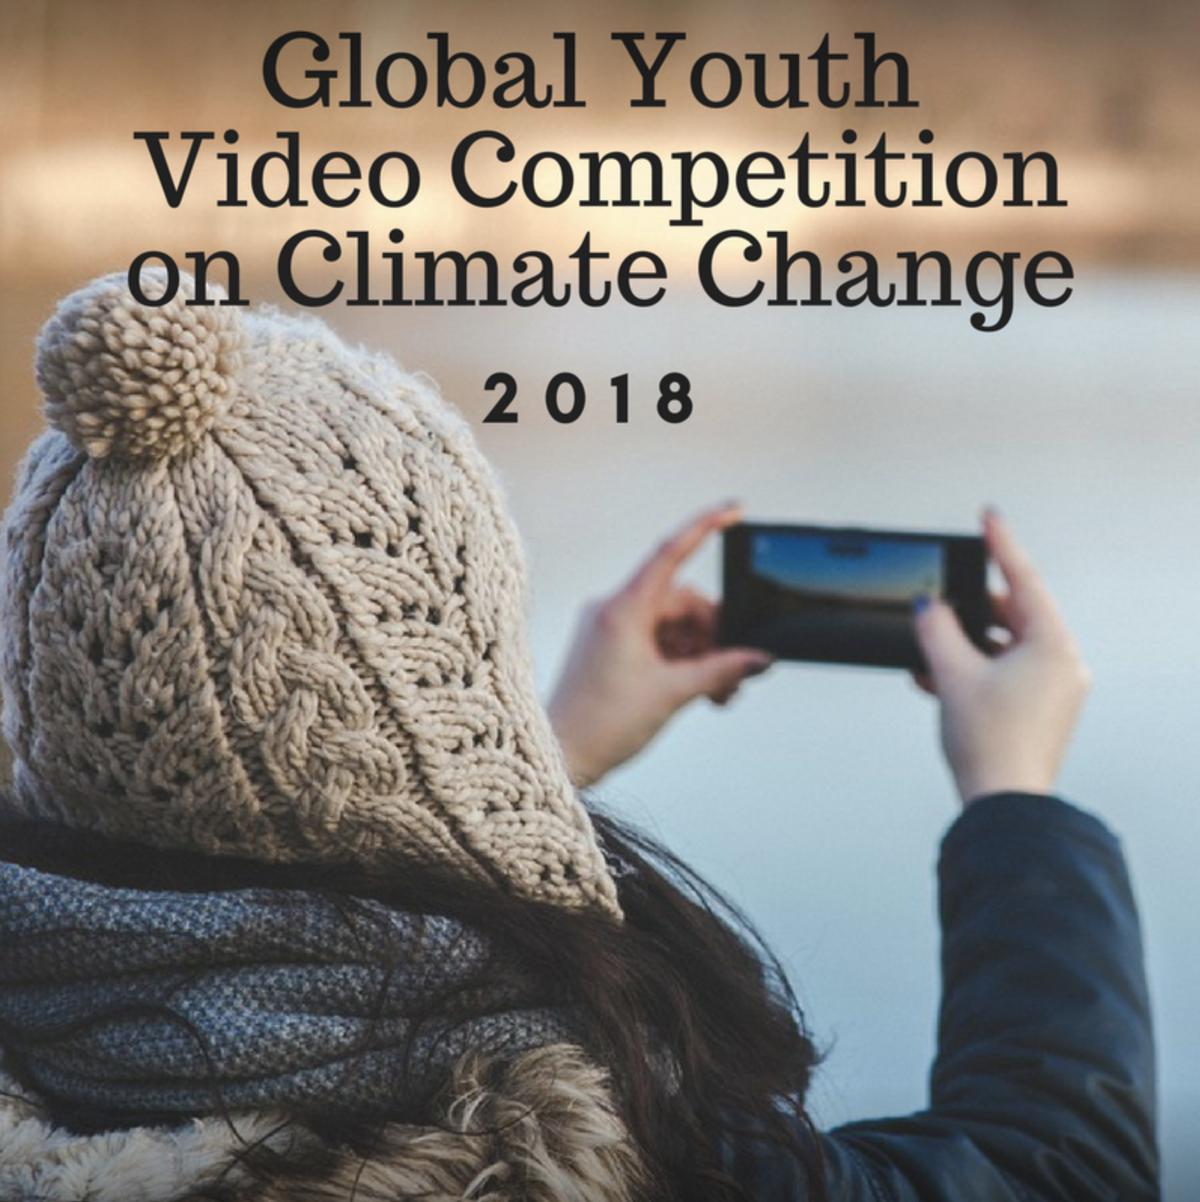 Concours mondial de vidéo de la jeunesse 2018 de l'ONU